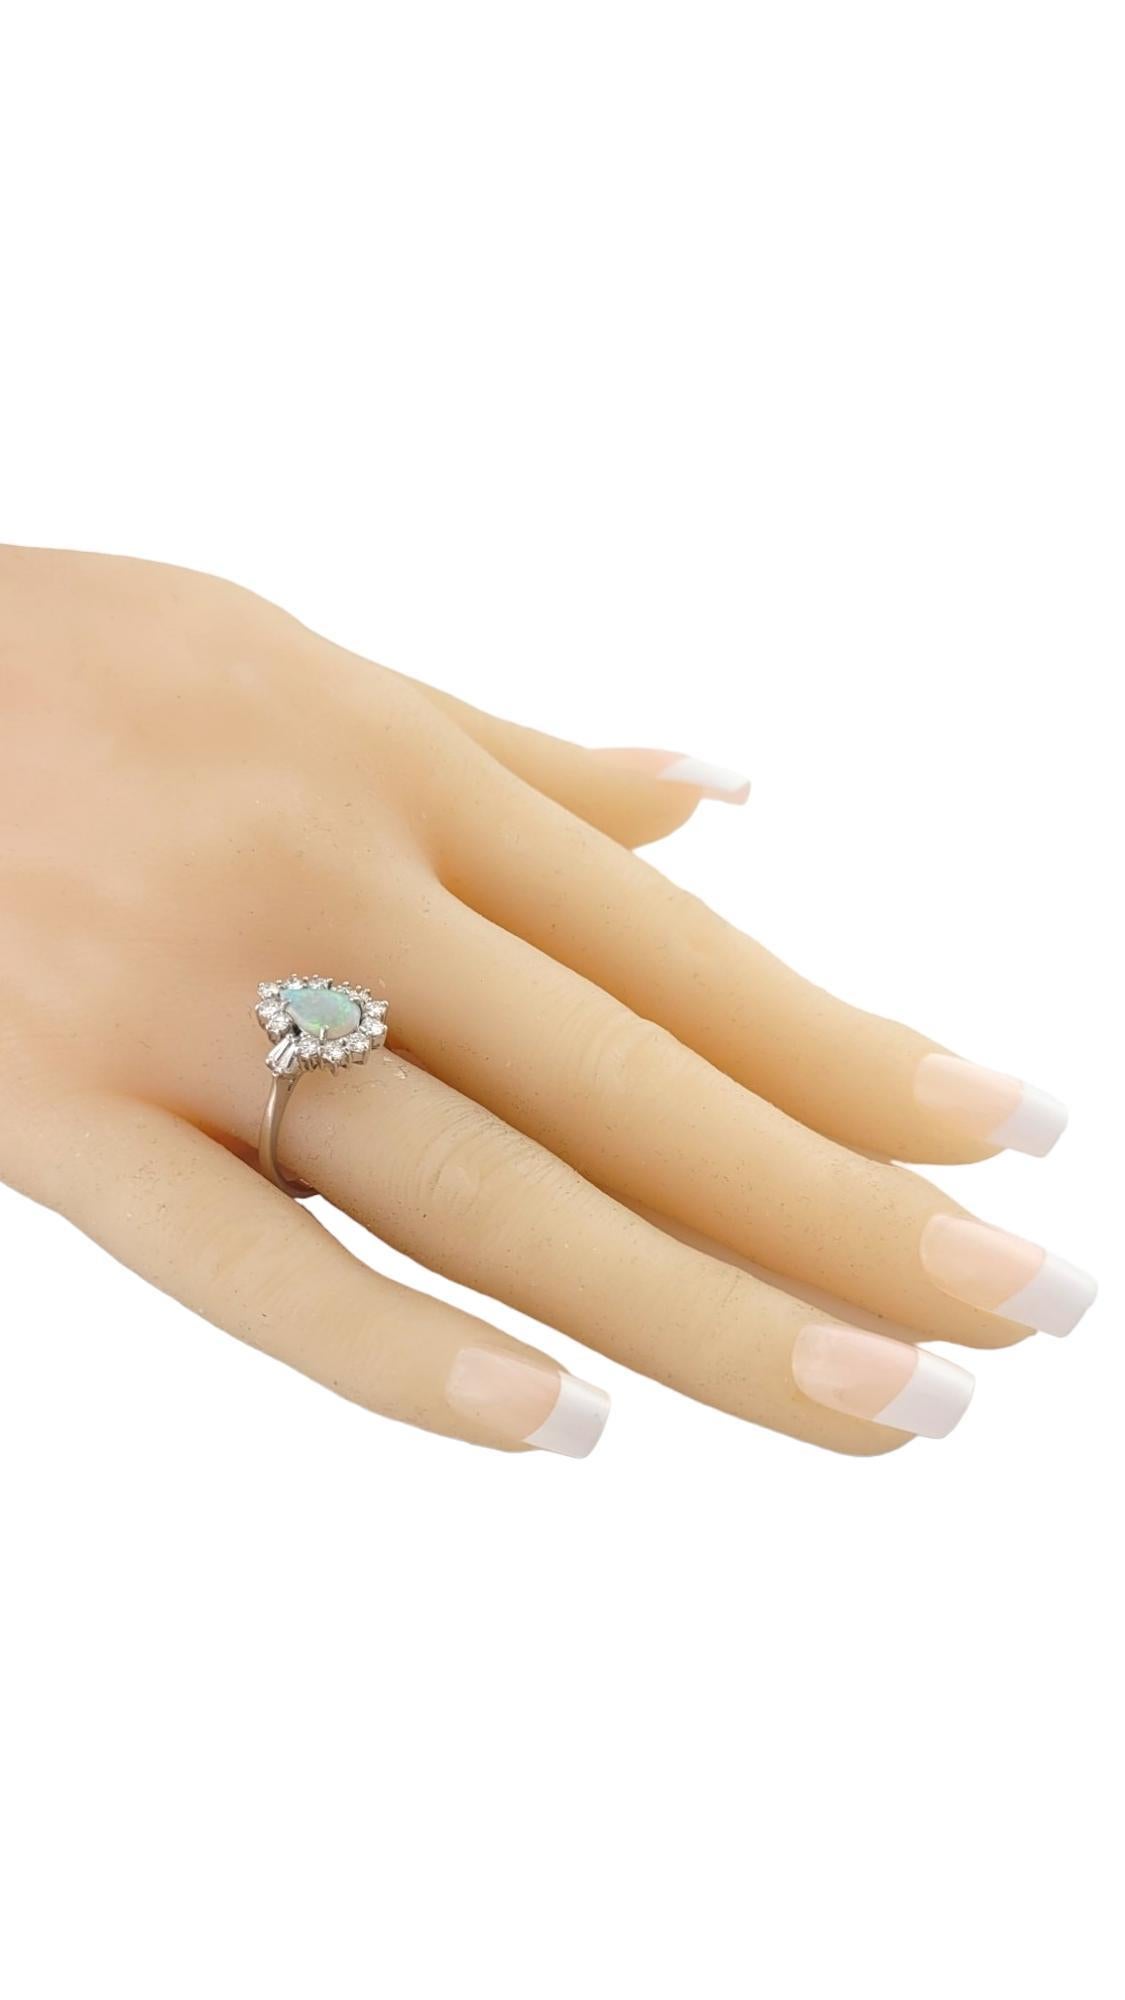 14K White Gold Opal Diamond Ring Size 7.25 #16172 3